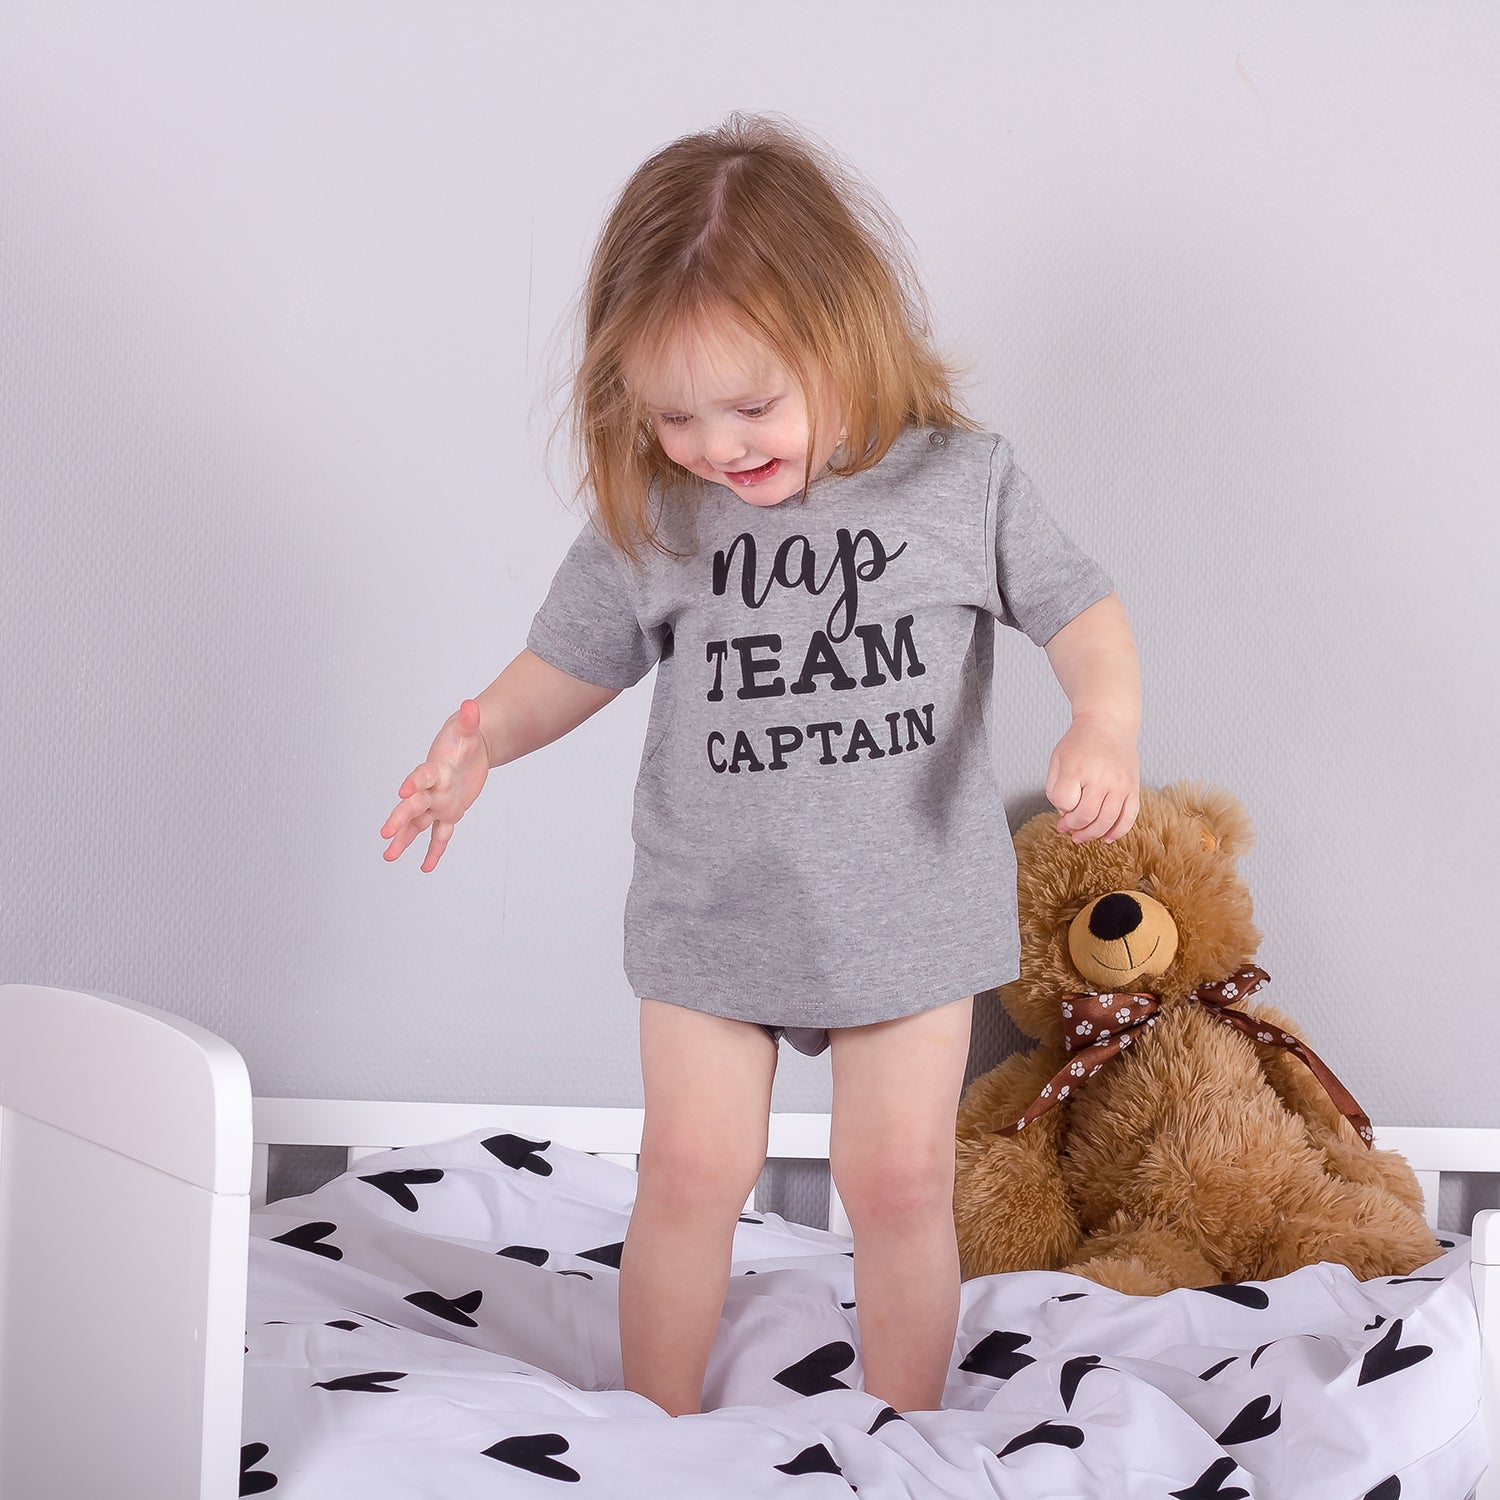 'Nap team captain' baby shortsleeve shirt